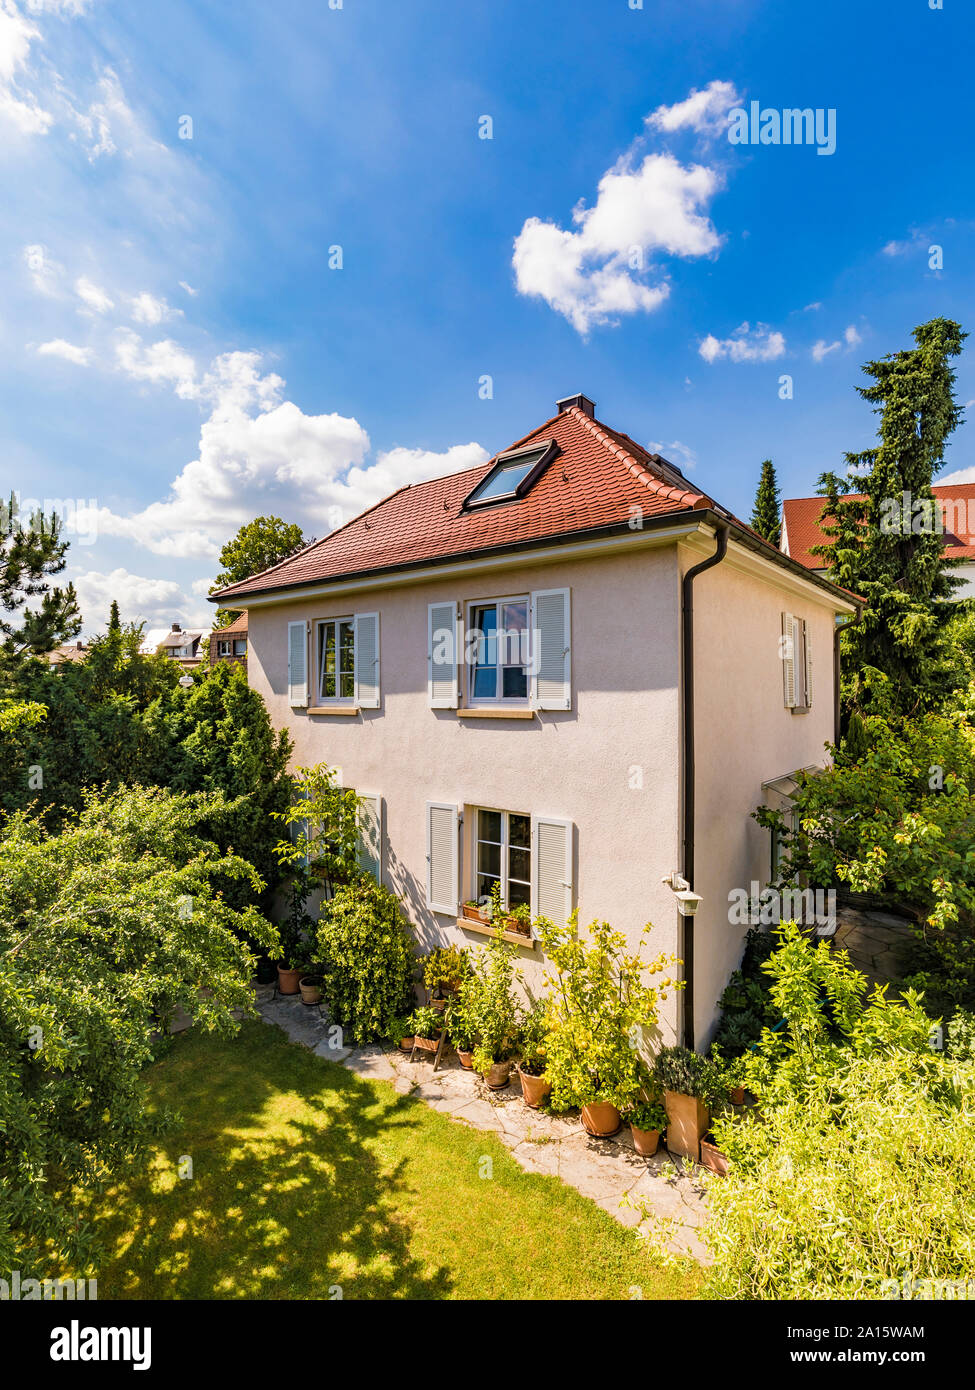 Germany, Baden-Wurttemberg, Stuttgart, Exterior of house in garden Stock Photo